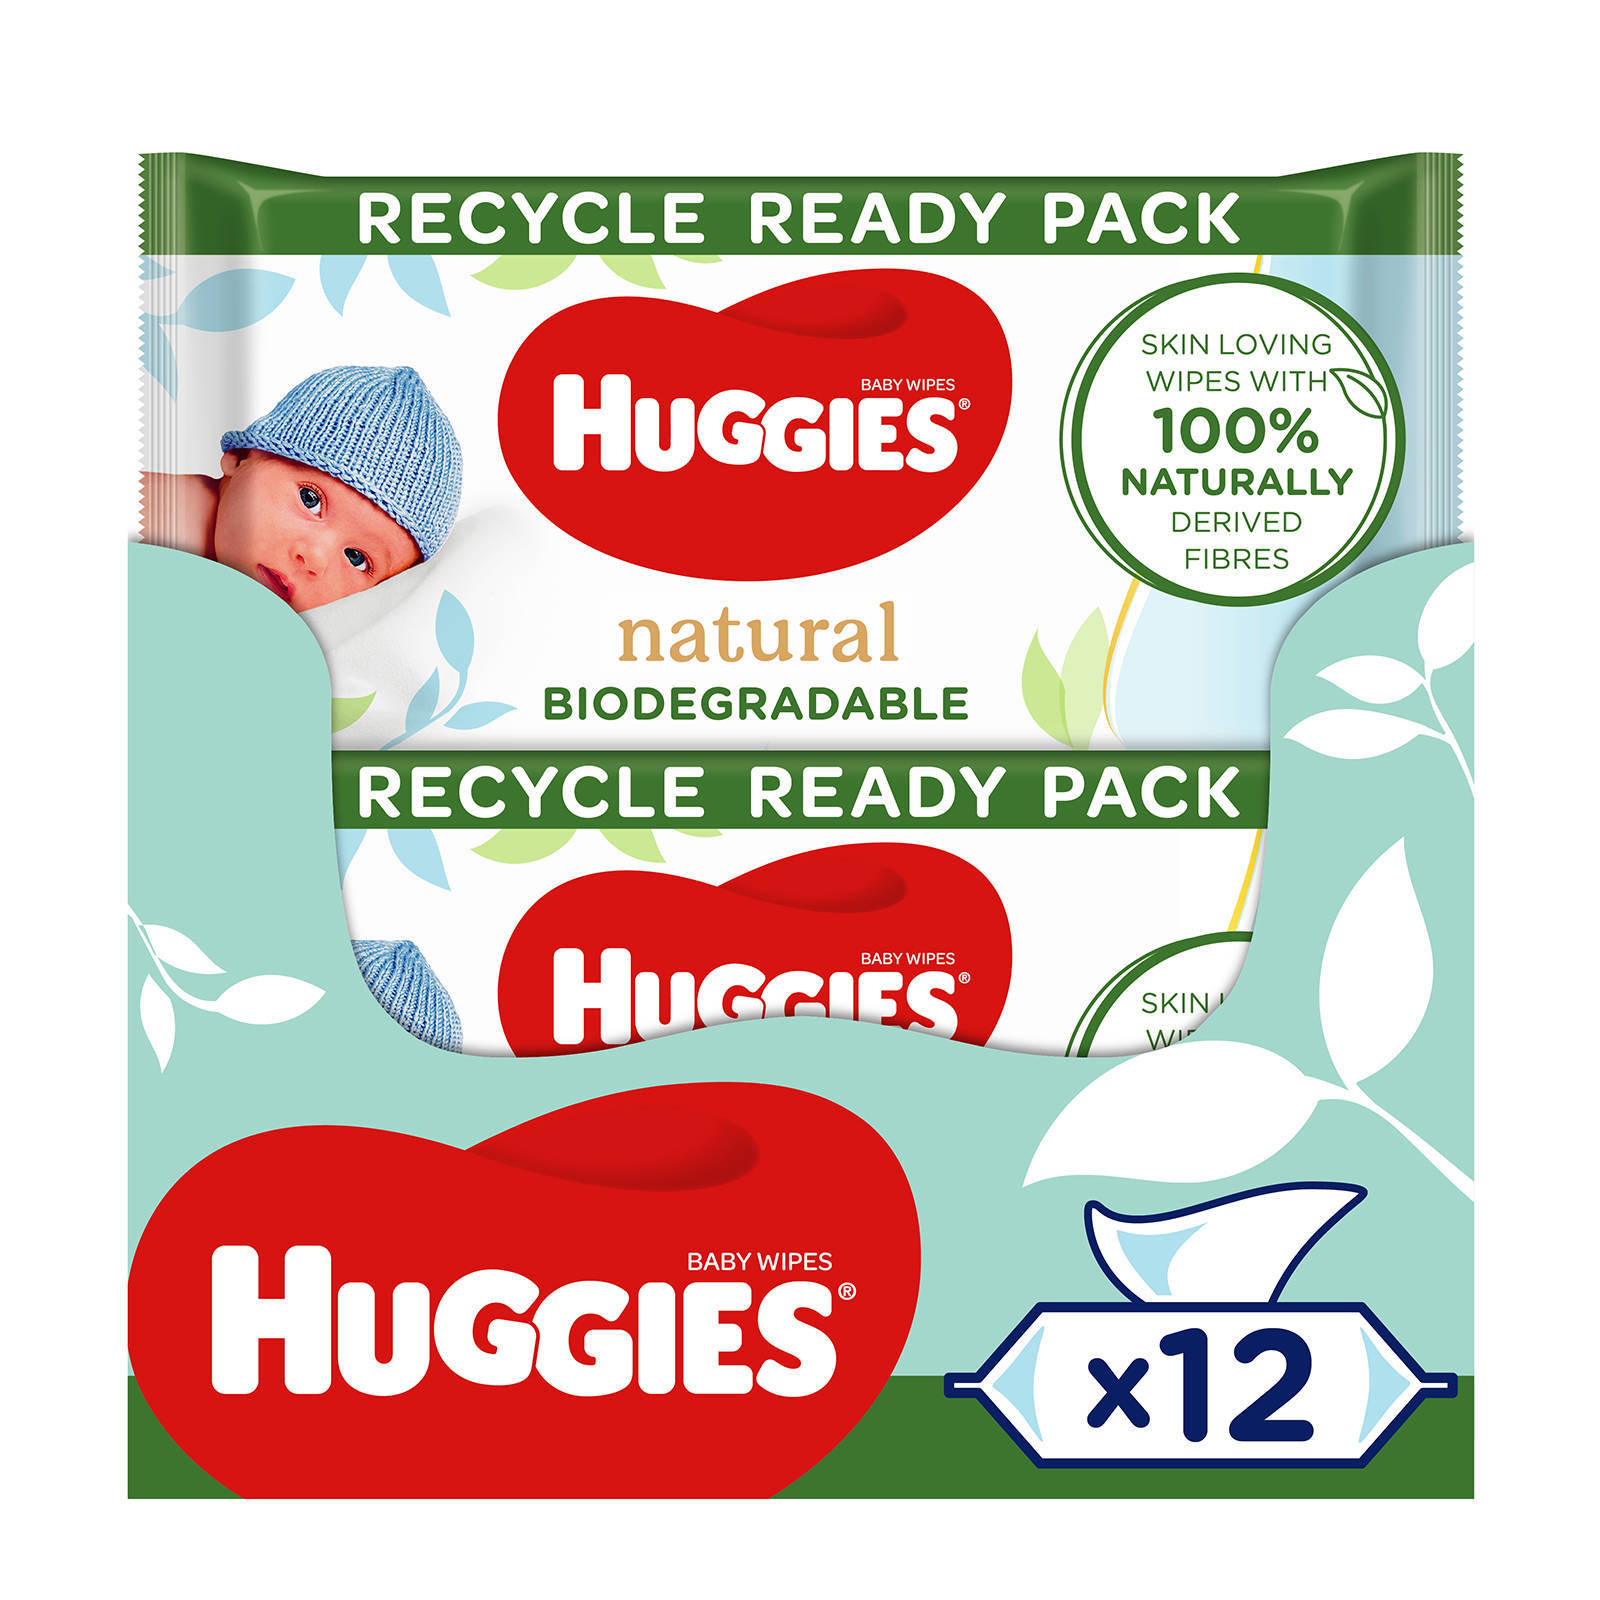 Huggies billendoekjes Natural Biodegradable 48 x 12 stuks online kopen